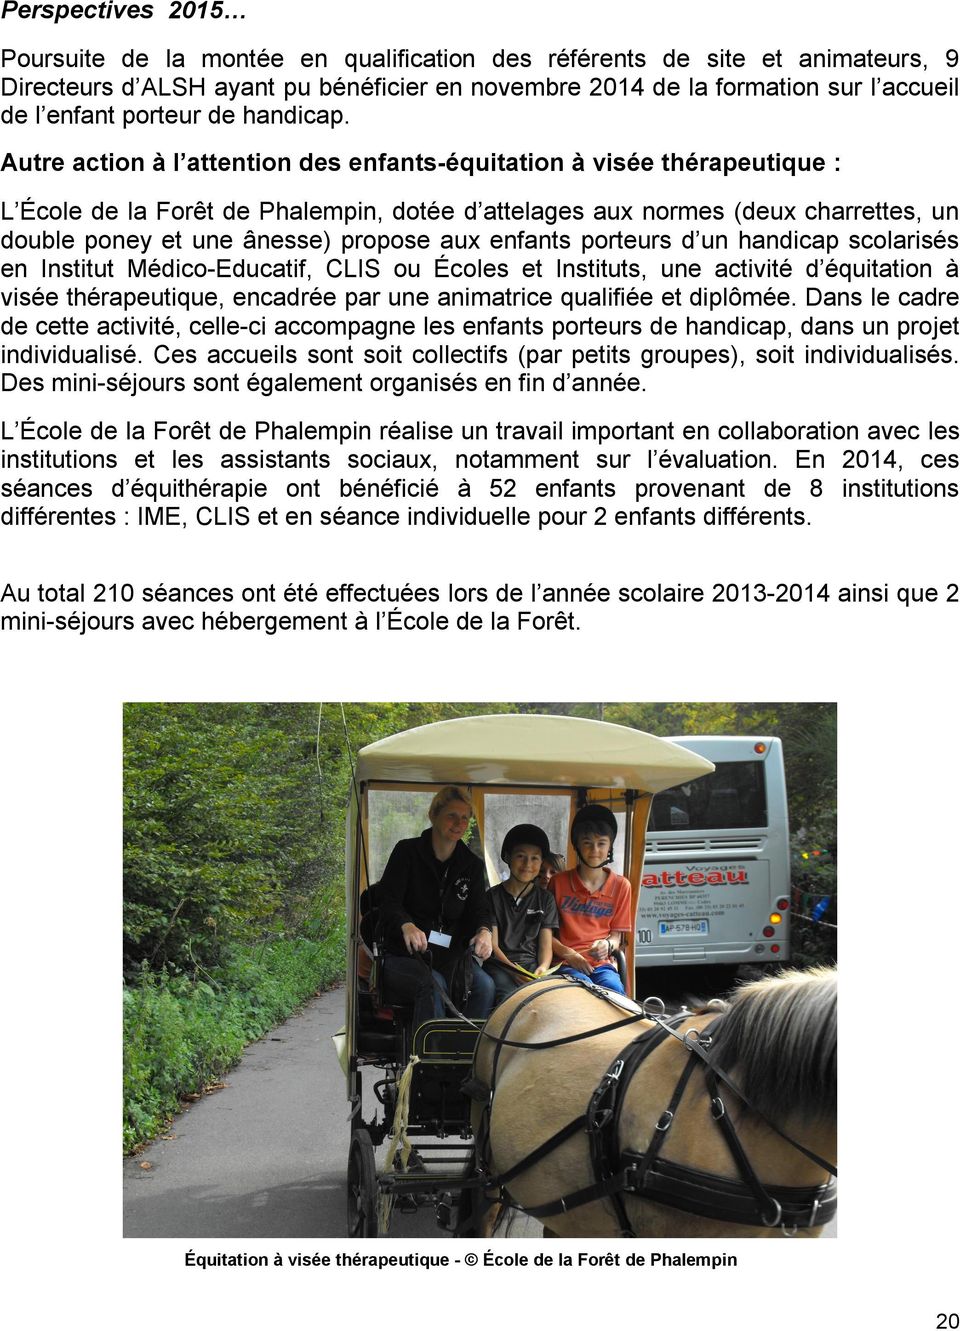 Autre action à l attention des enfantséquitation à visée thérapeutique : L École de la Forêt de Phalempin, dotée d attelages aux normes (deux charrettes, un double poney et une ânesse) propose aux